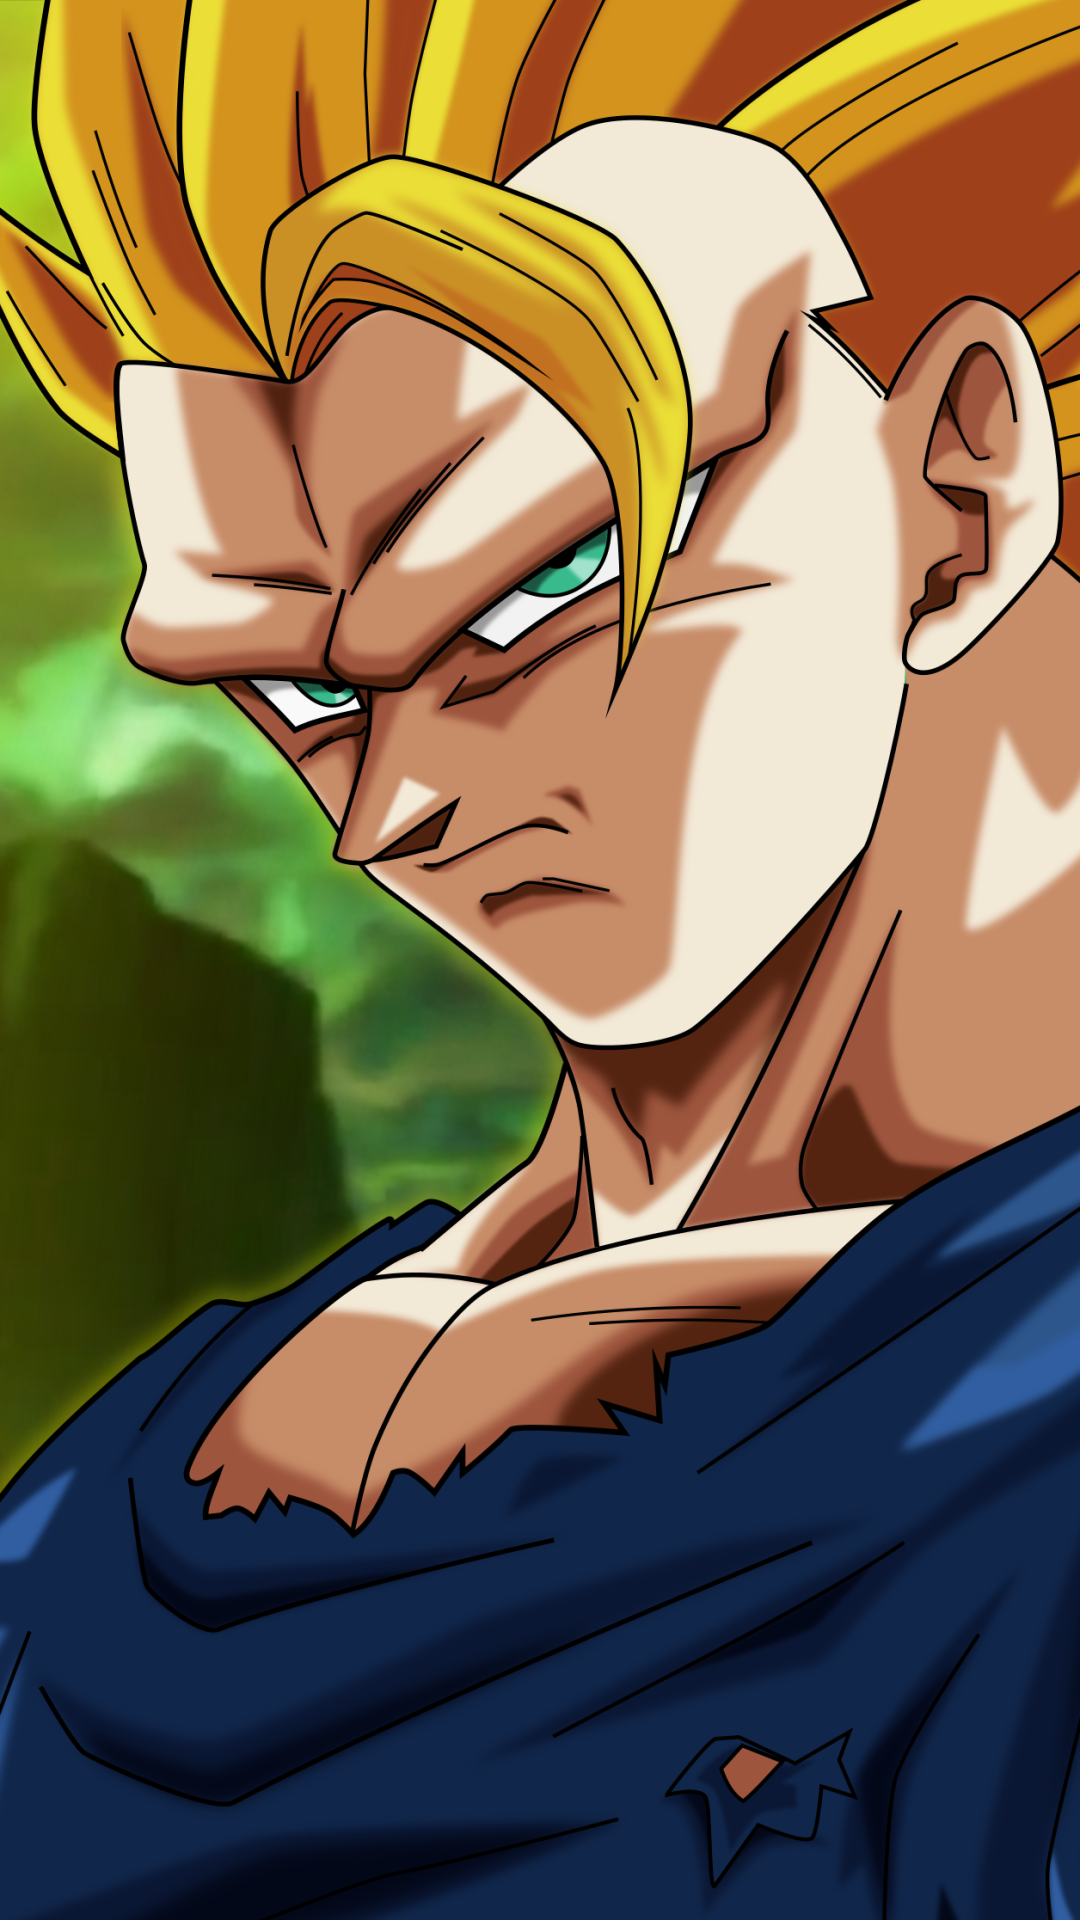 Goku Super Saiyan 3 by Natka505